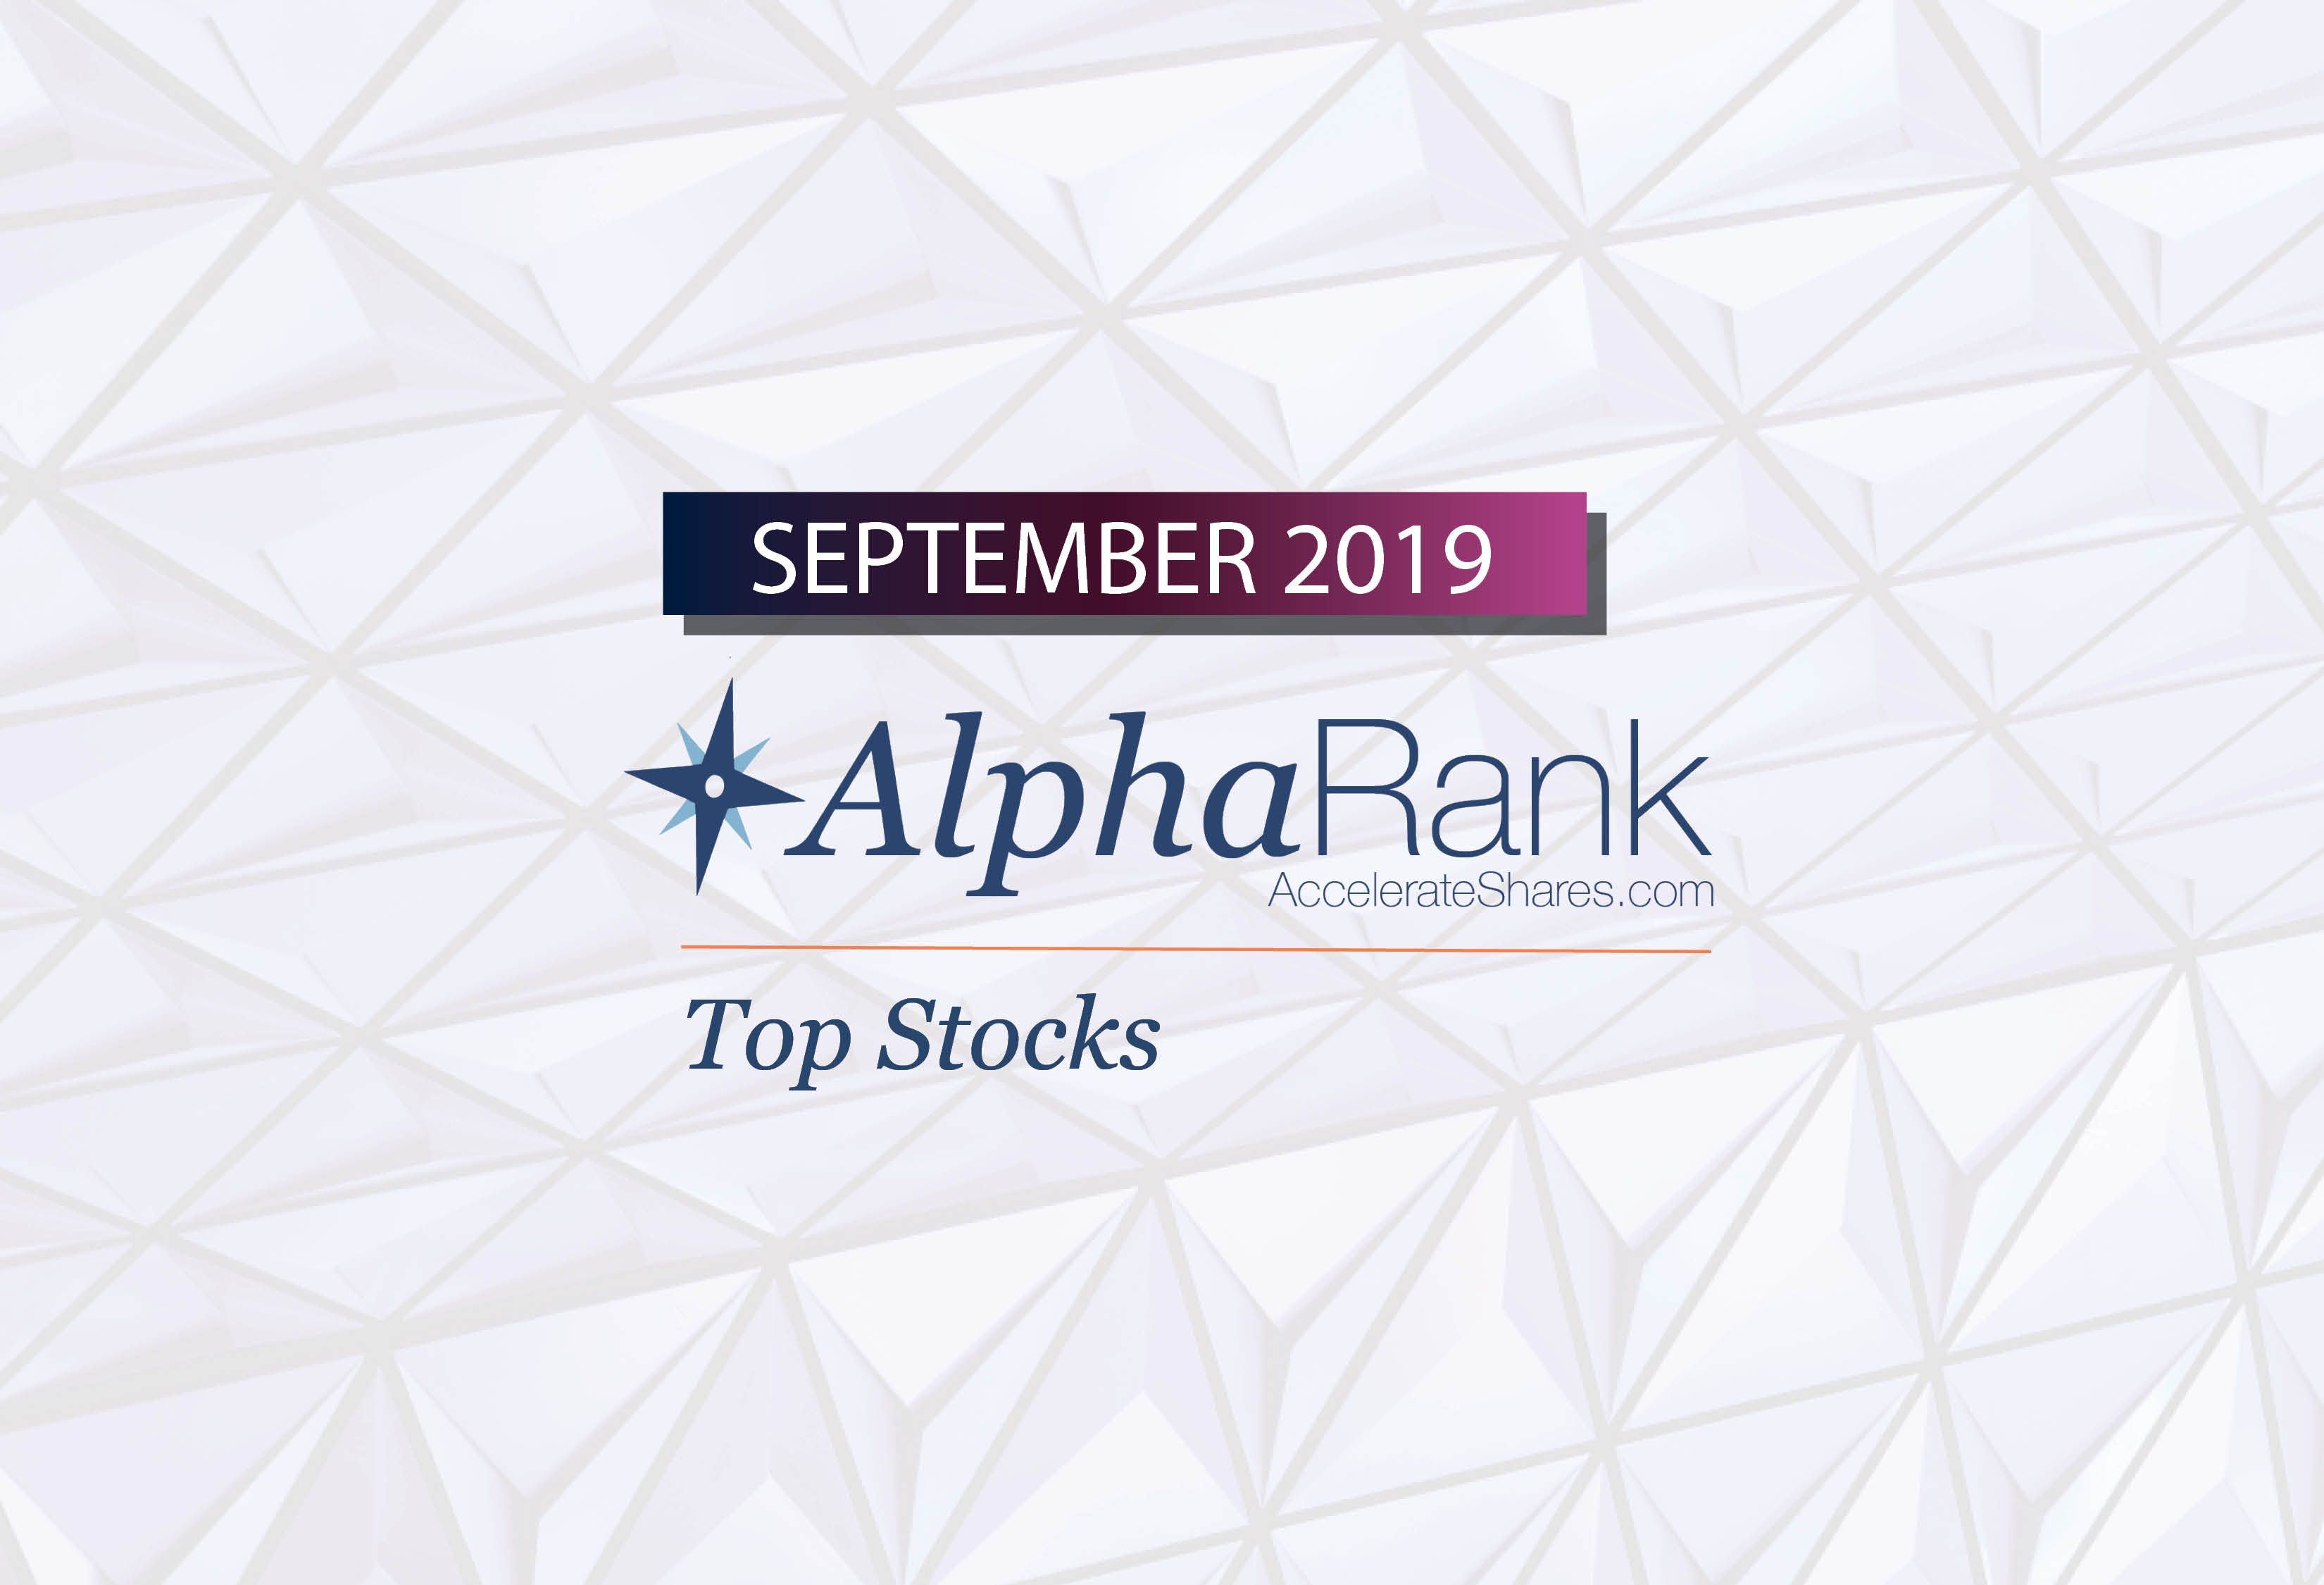 AlphaRank Top Stocks– September 2019